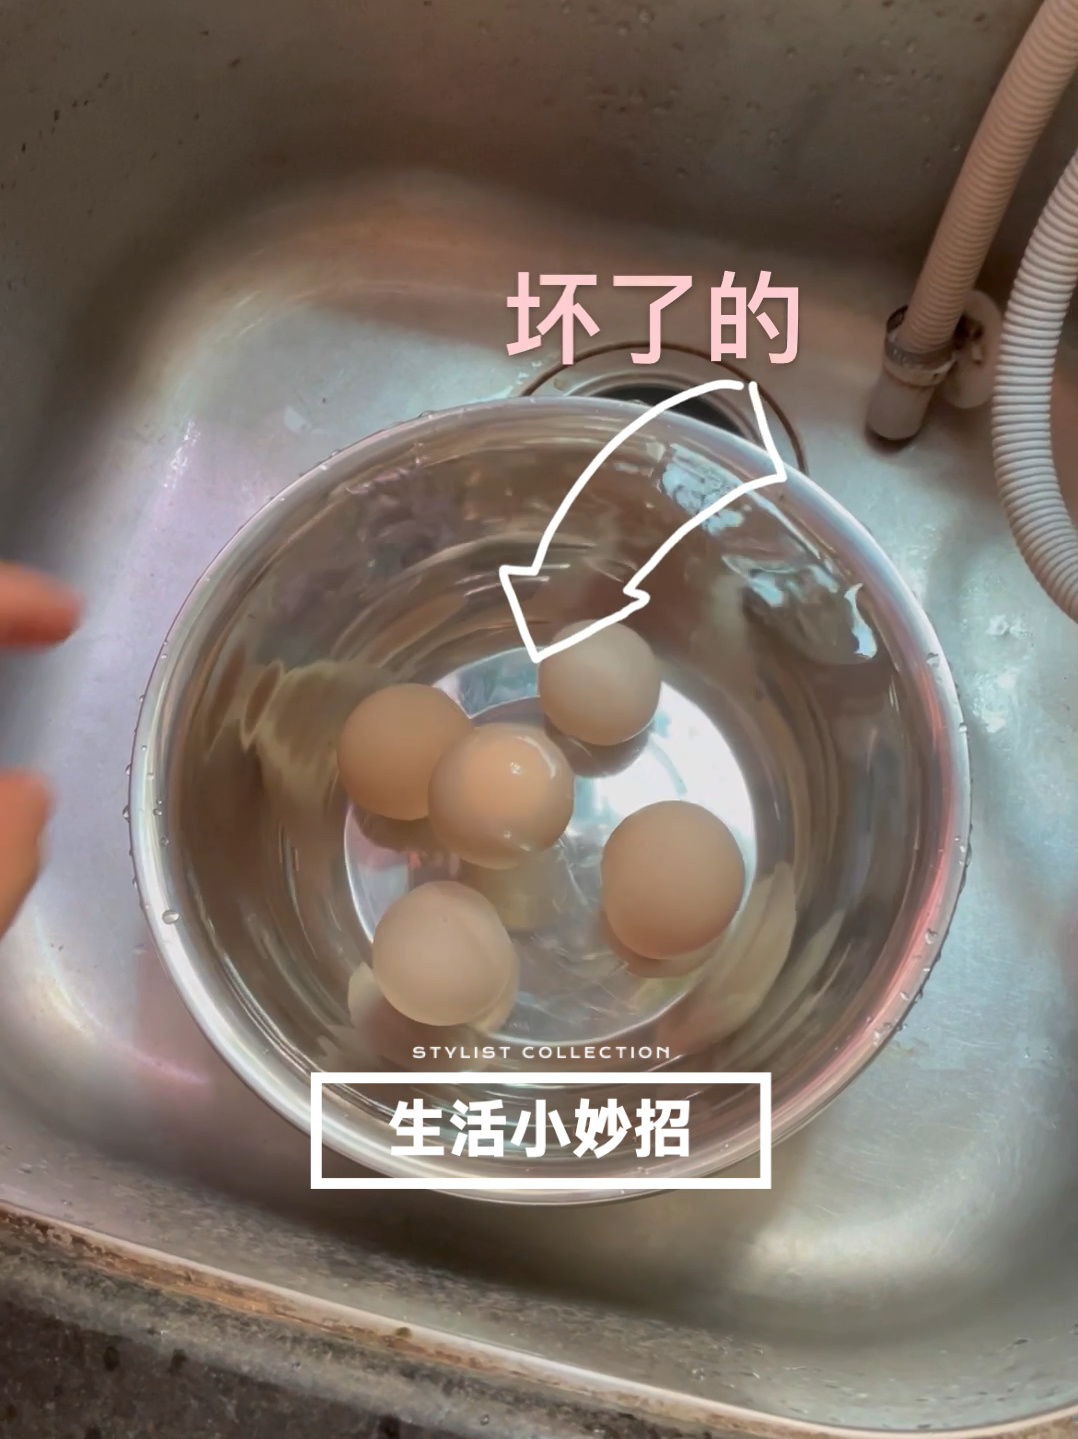 韭菜炒鸡蛋怎么做_韭菜炒鸡蛋的做法视频_豆果美食